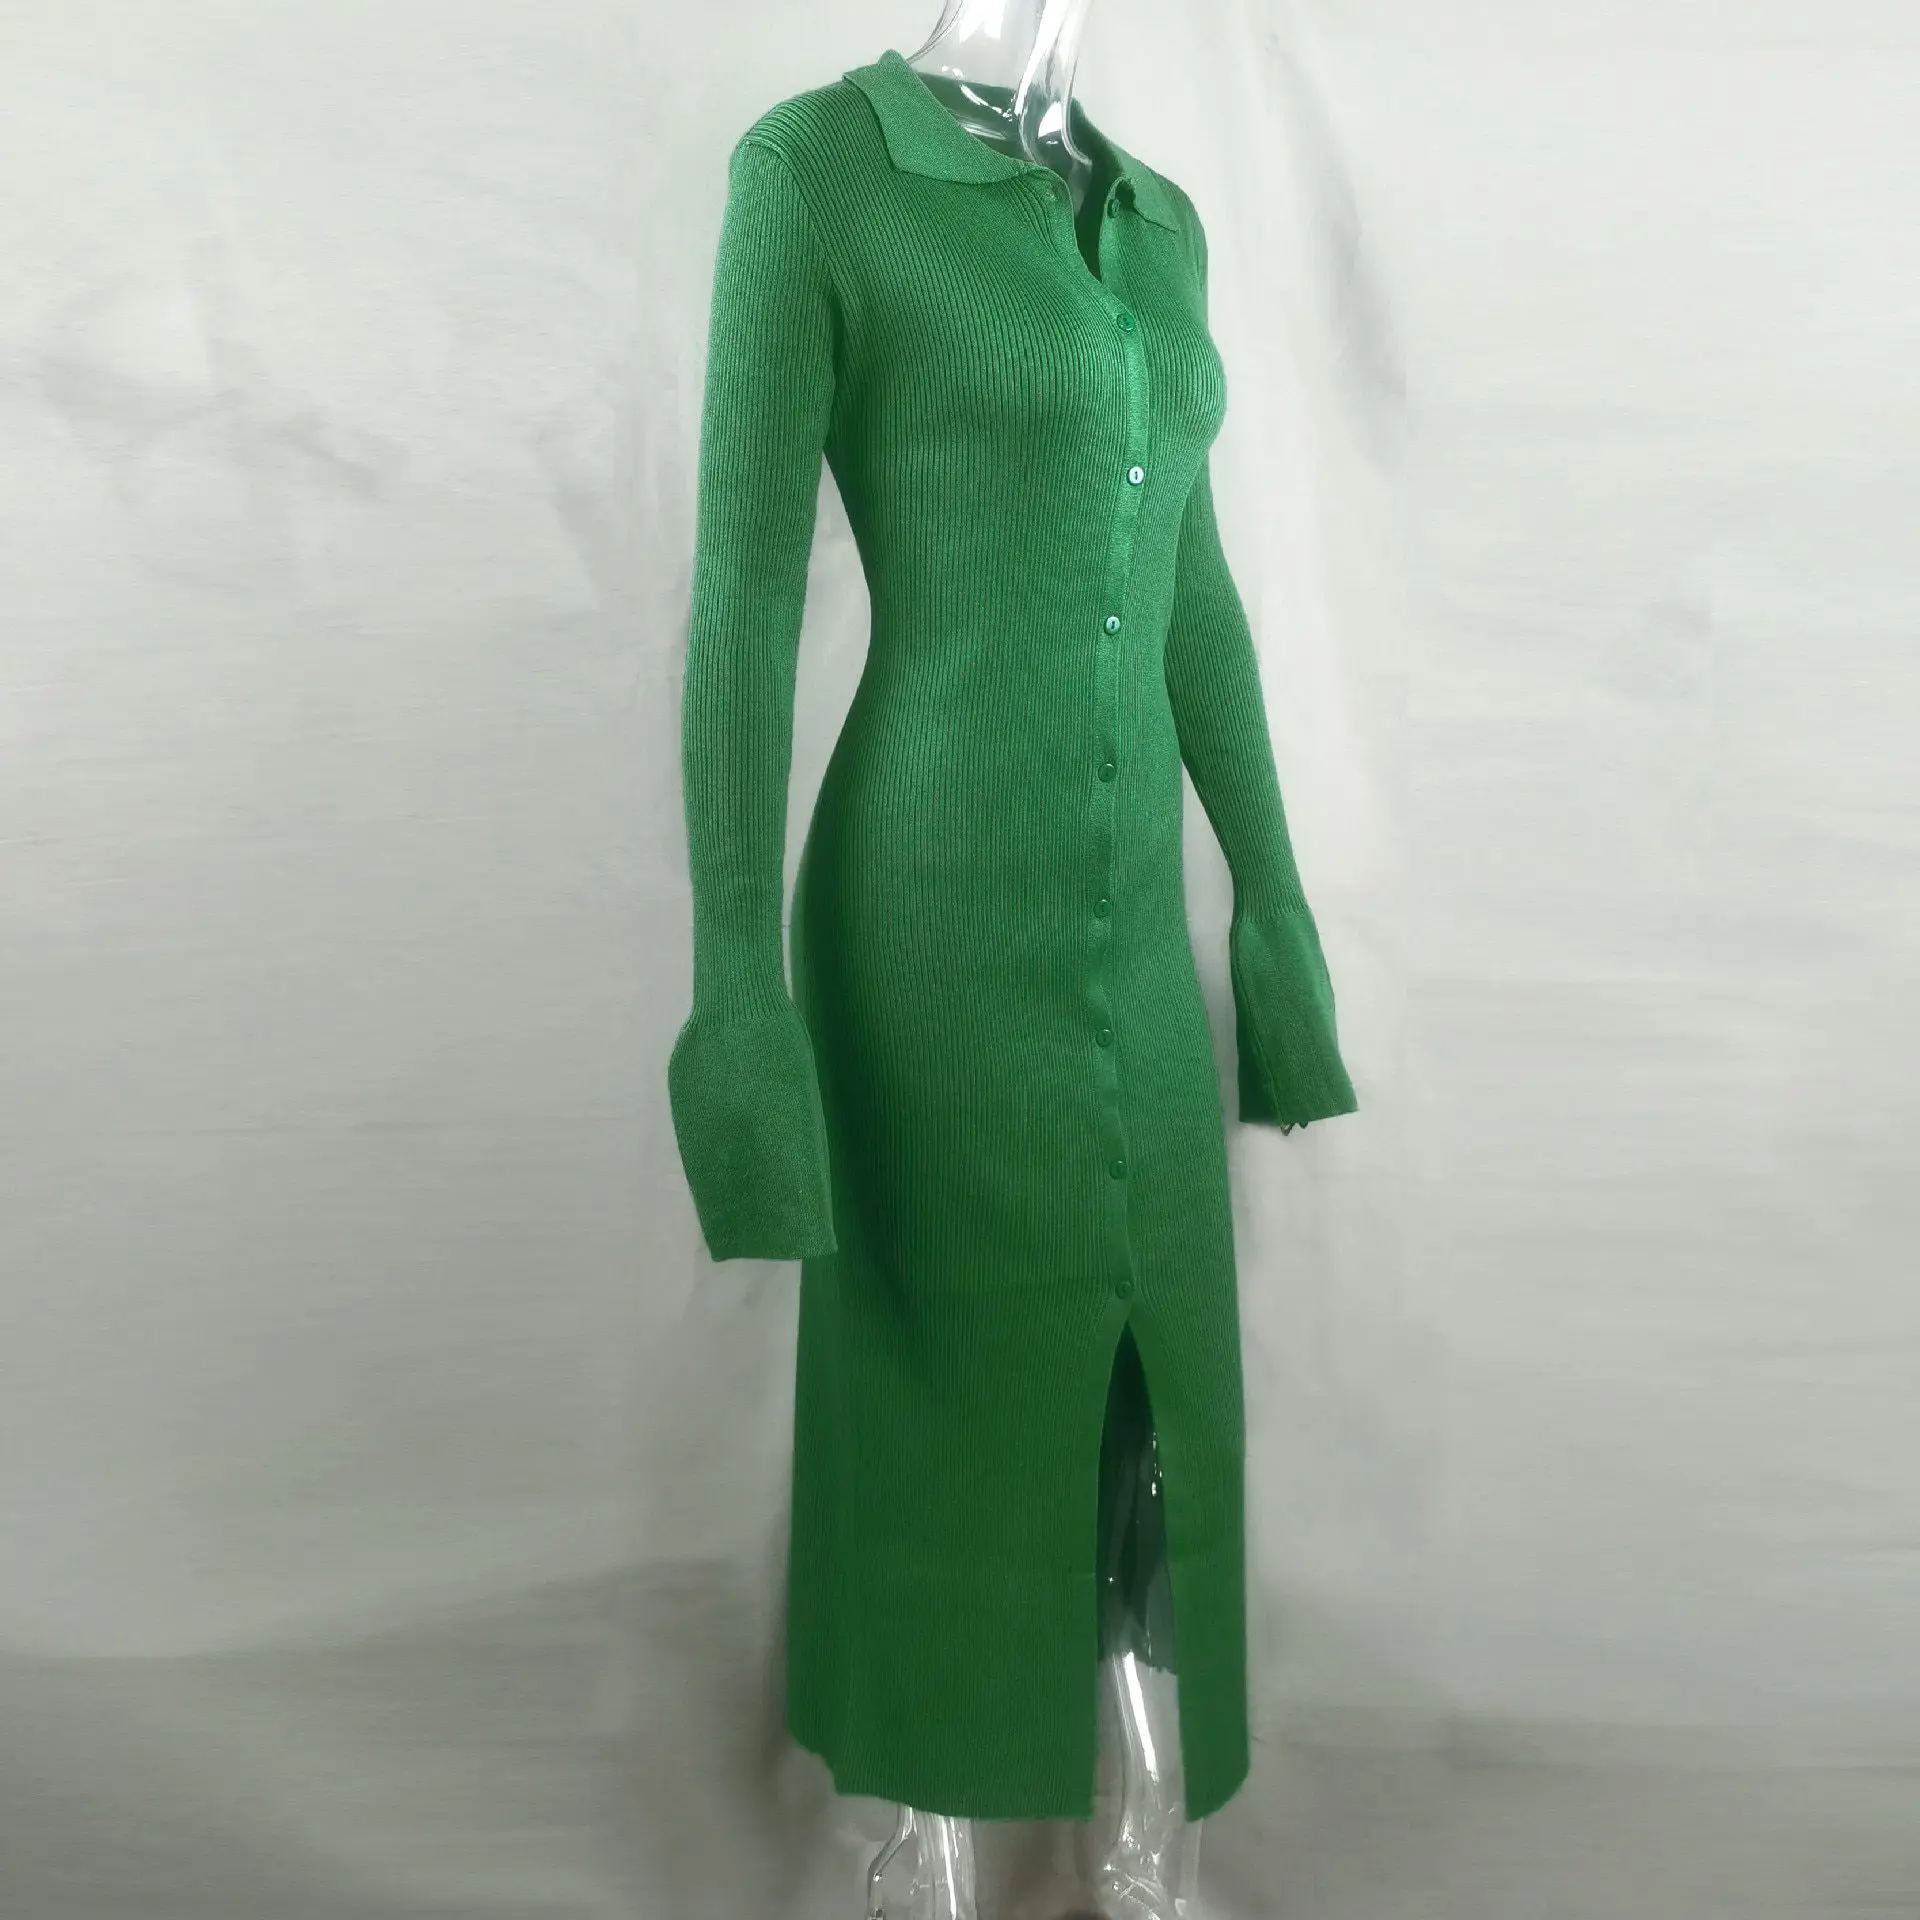 Knit Long Sleeve Single Breasted Mid Split Sweater Dress in Dresses